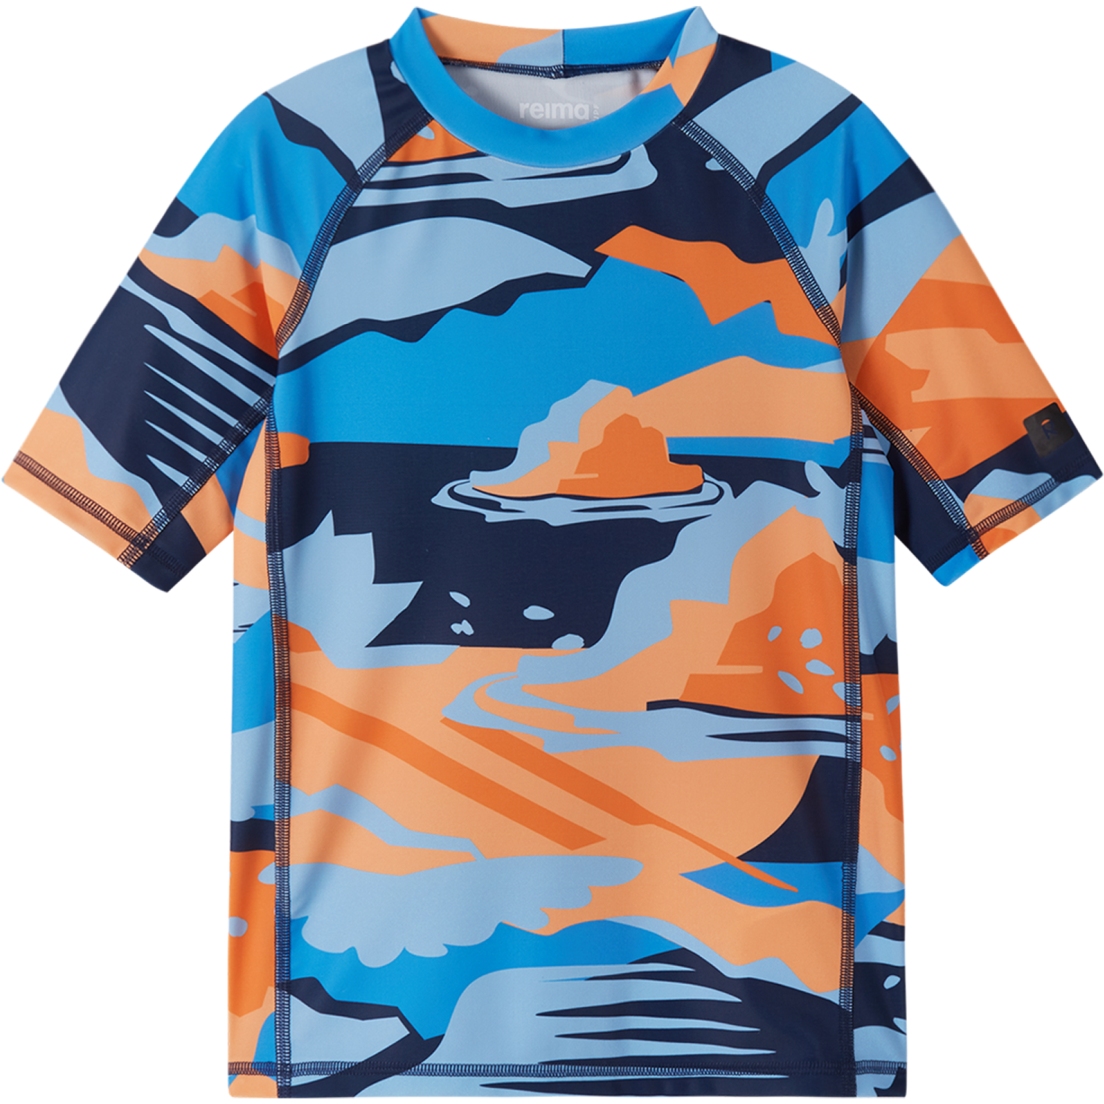 Produktbild von Reima Uiva Schwimm-Shirt Kinder - navy 6981